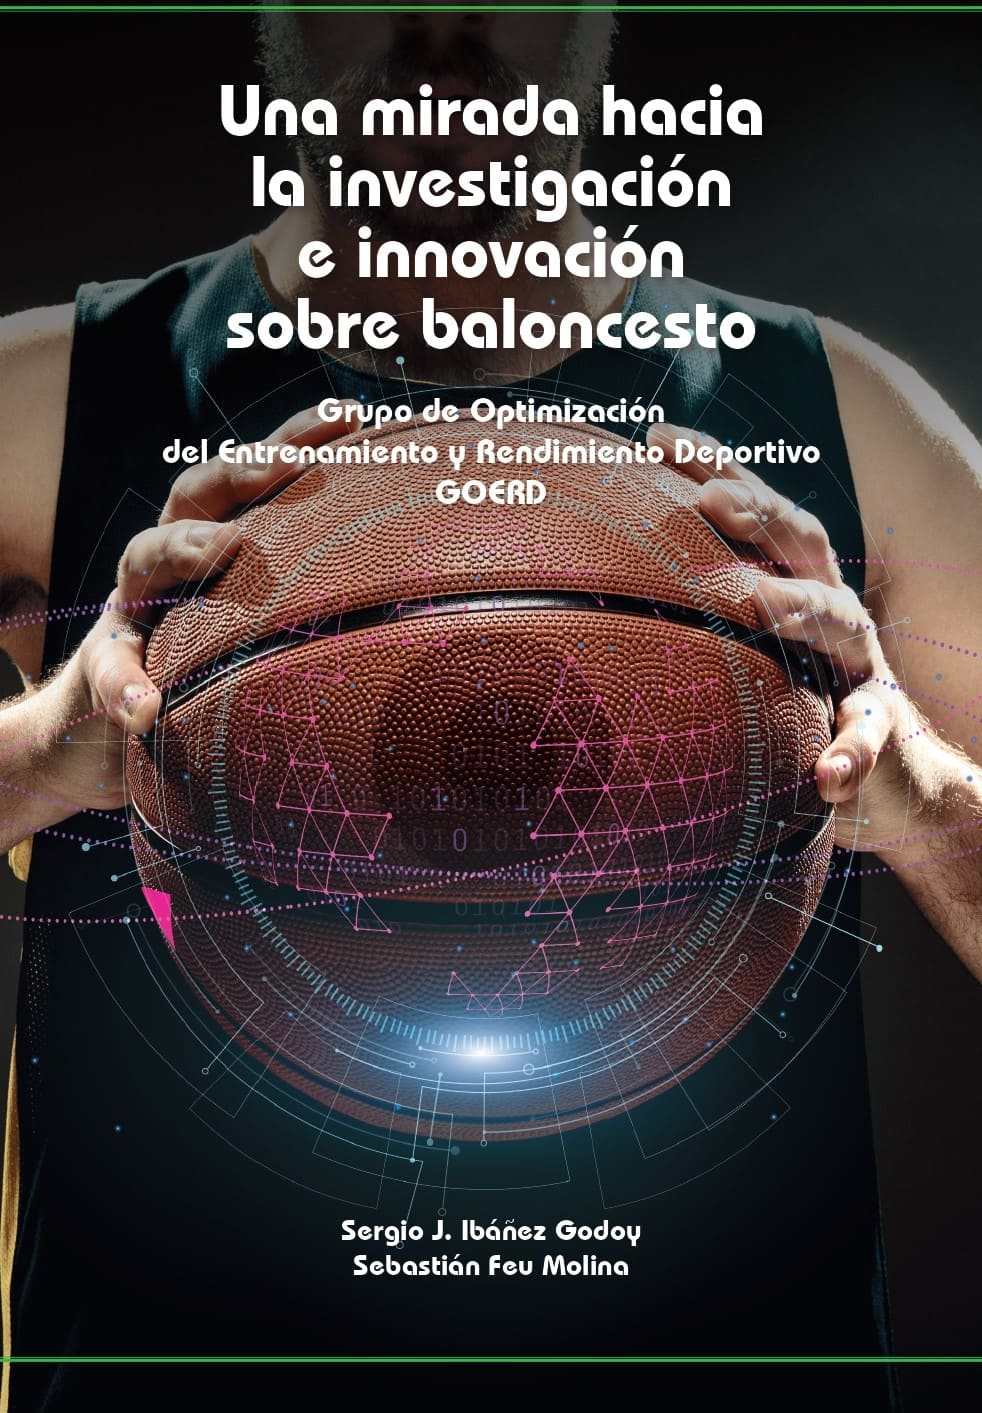 Imagen de portada del libro Una mirada hacia la investigación e innovación sobre baloncesto